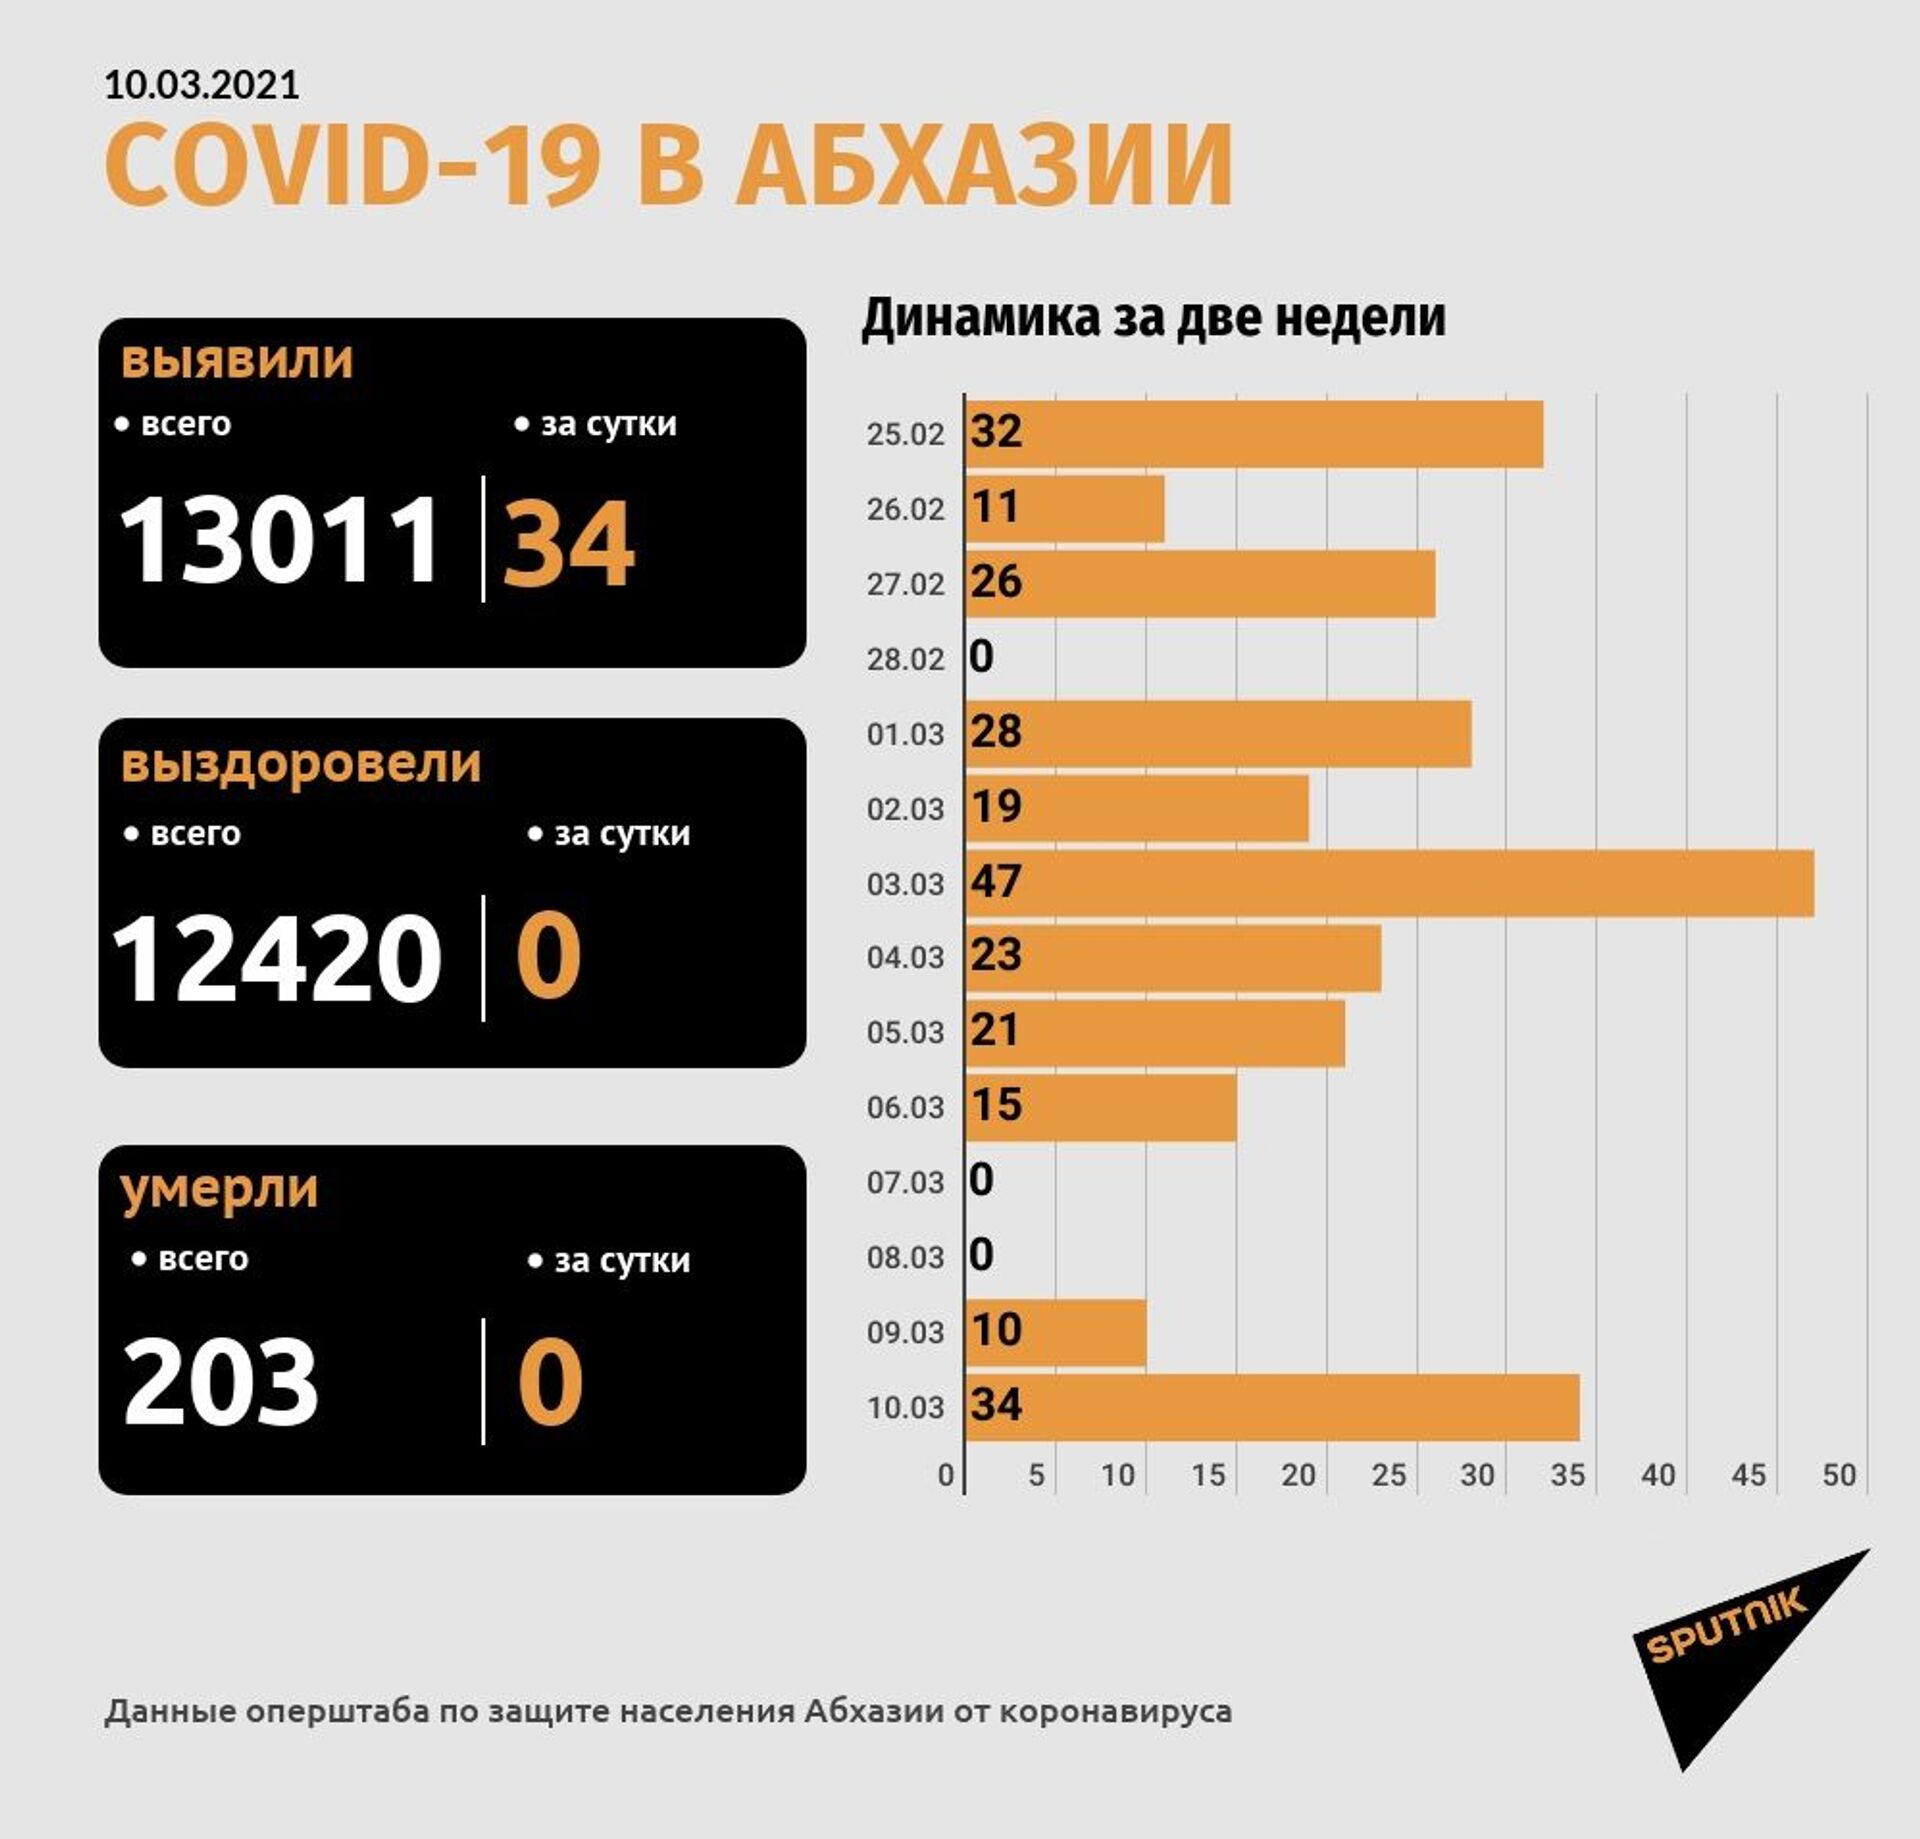 Свыше 13 тысяч заражений коронавирусом выявлено в Абхазии за все время - Sputnik Абхазия, 1920, 10.03.2021